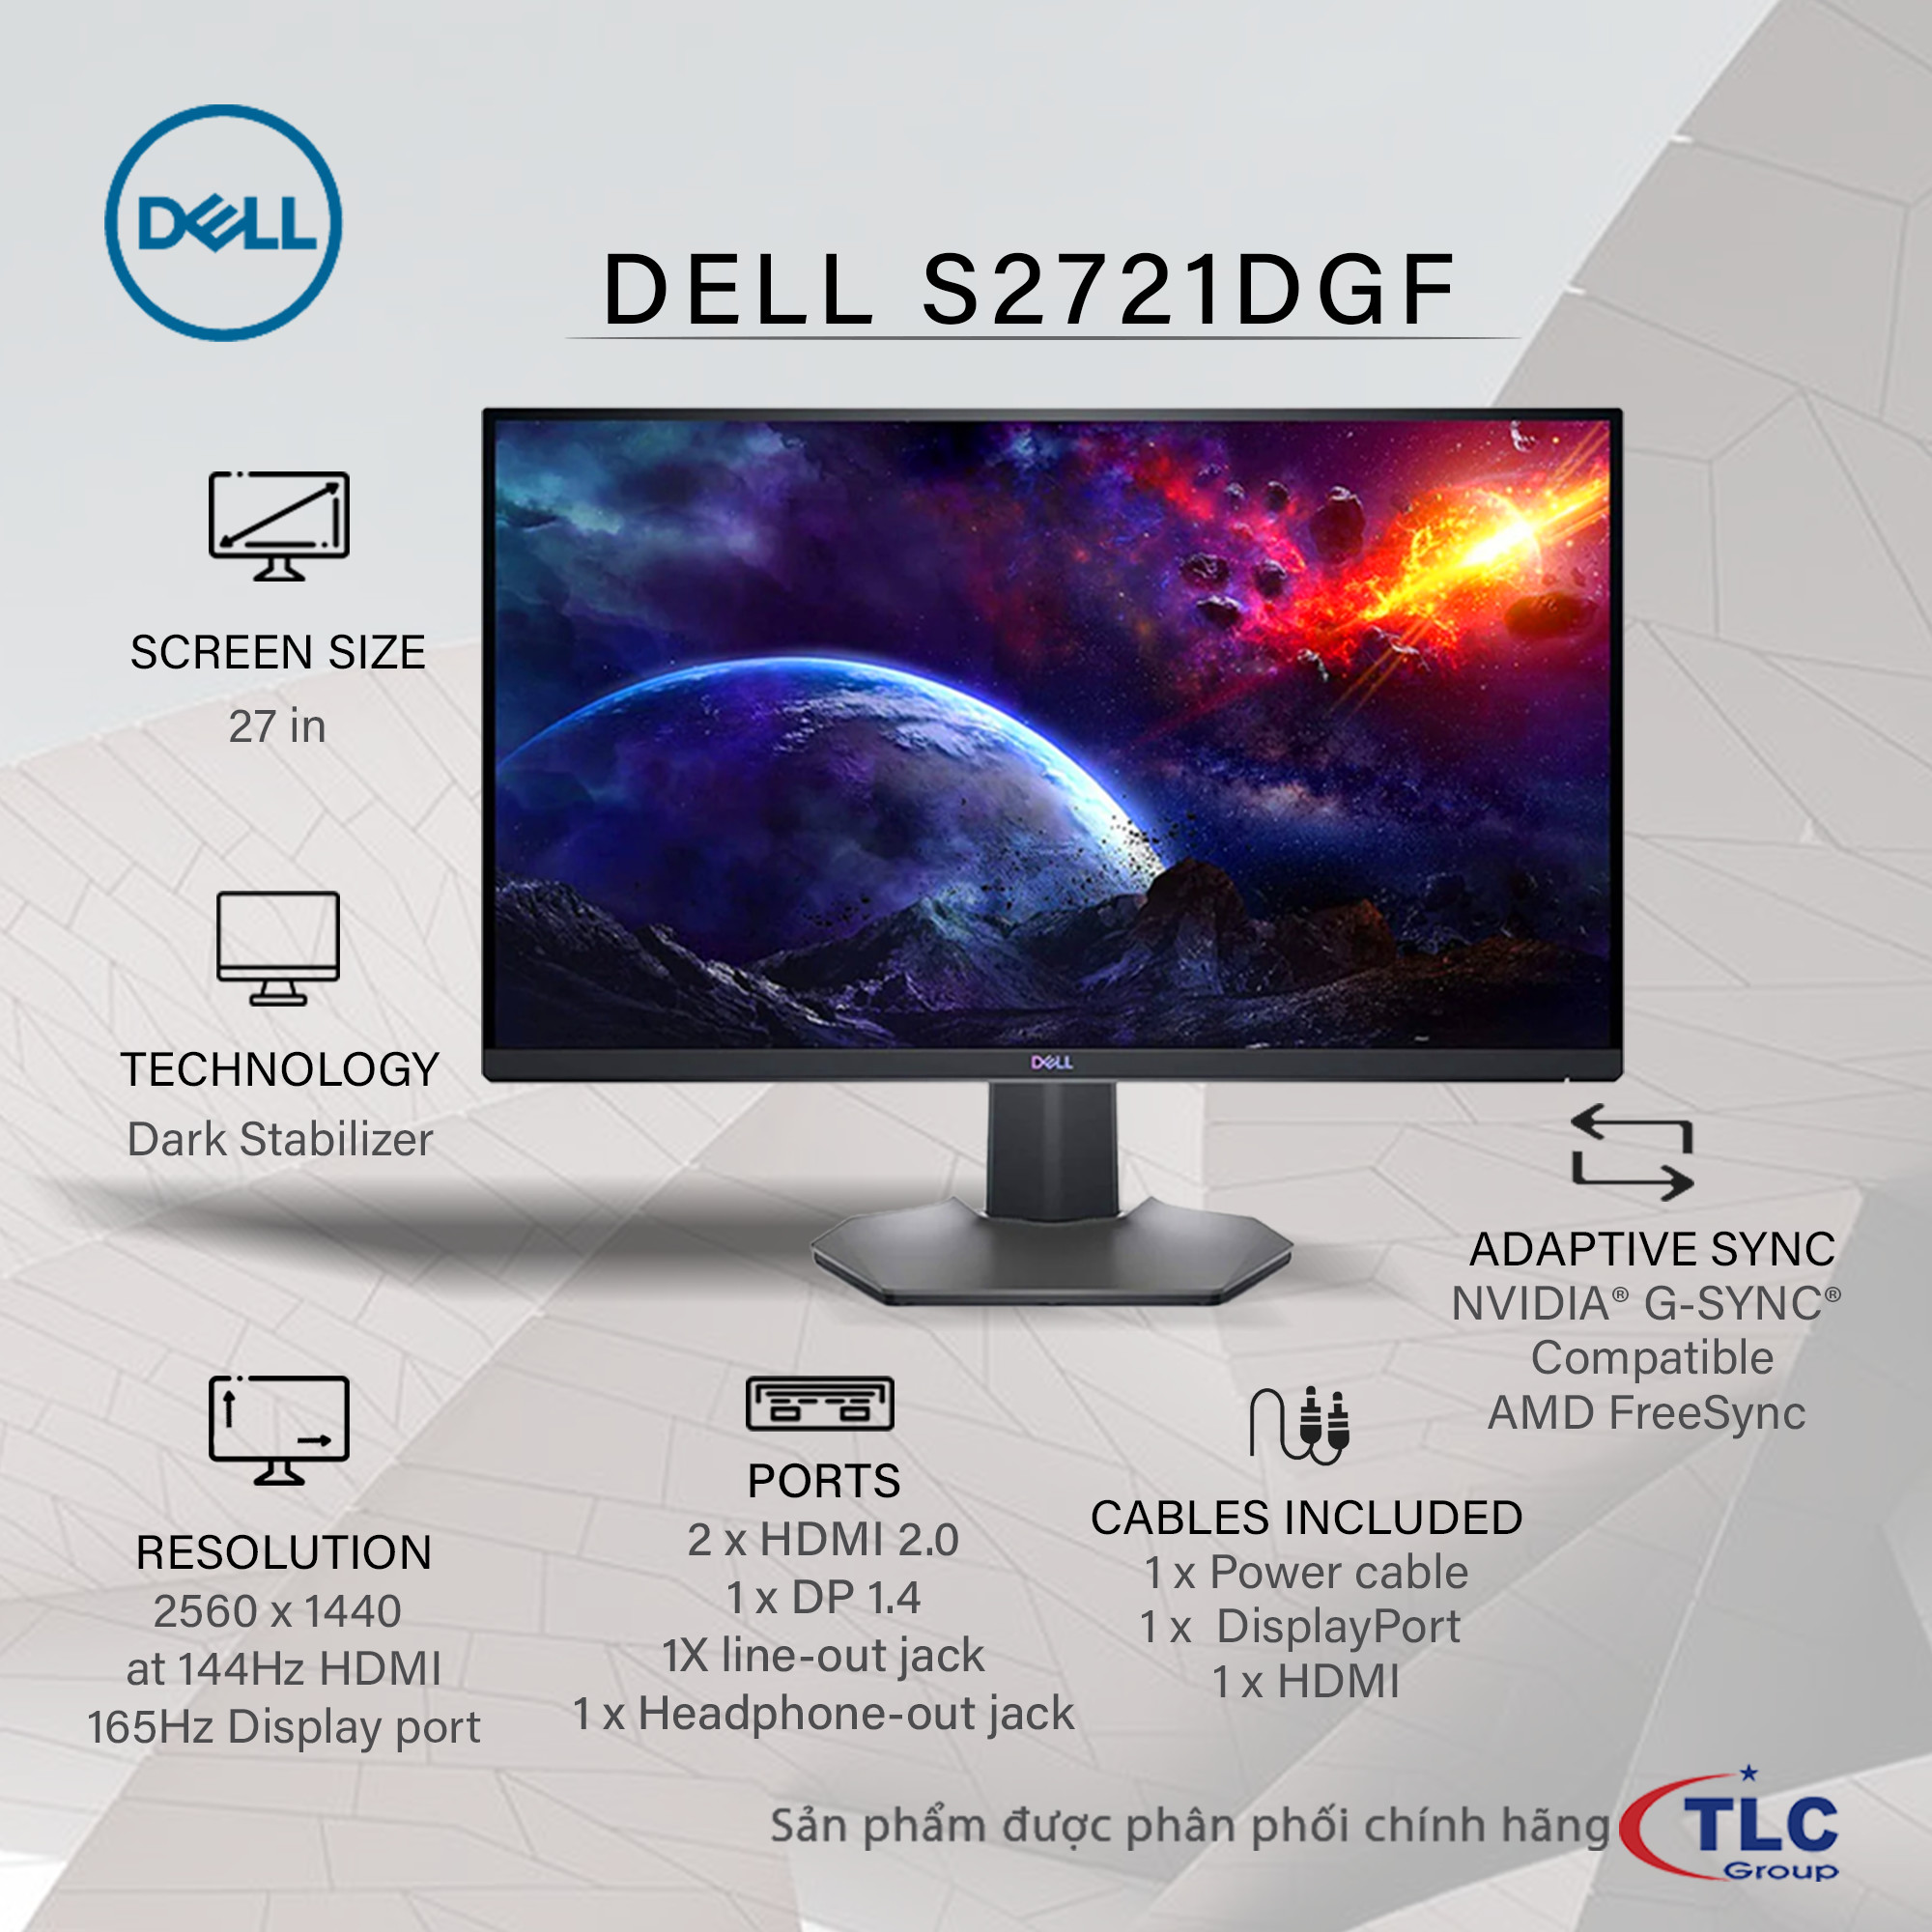 Nâng tầm đẳng cấp Gaming cùng Dell S2721DGF 27” QHD IPS 165Hz